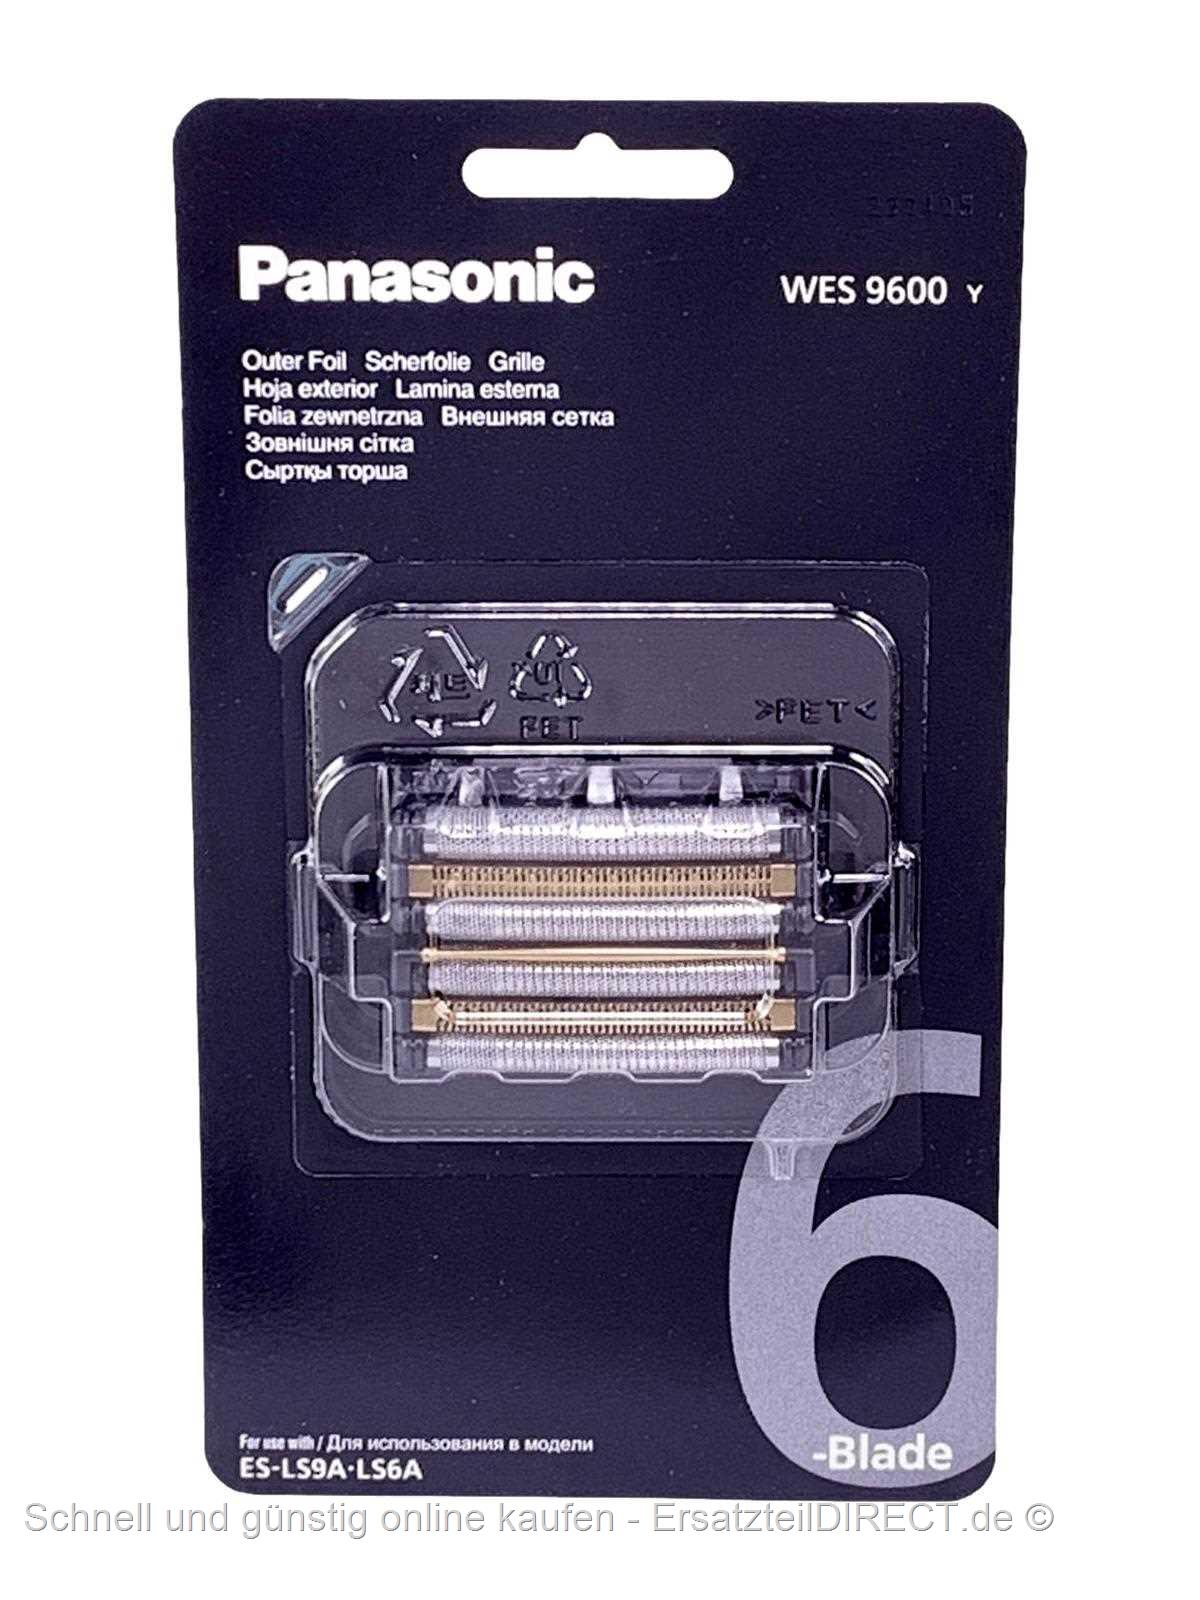 Panasonic Kombipack Scherfolie bei WES9600Y kaufen günstig +Klingen WES9600